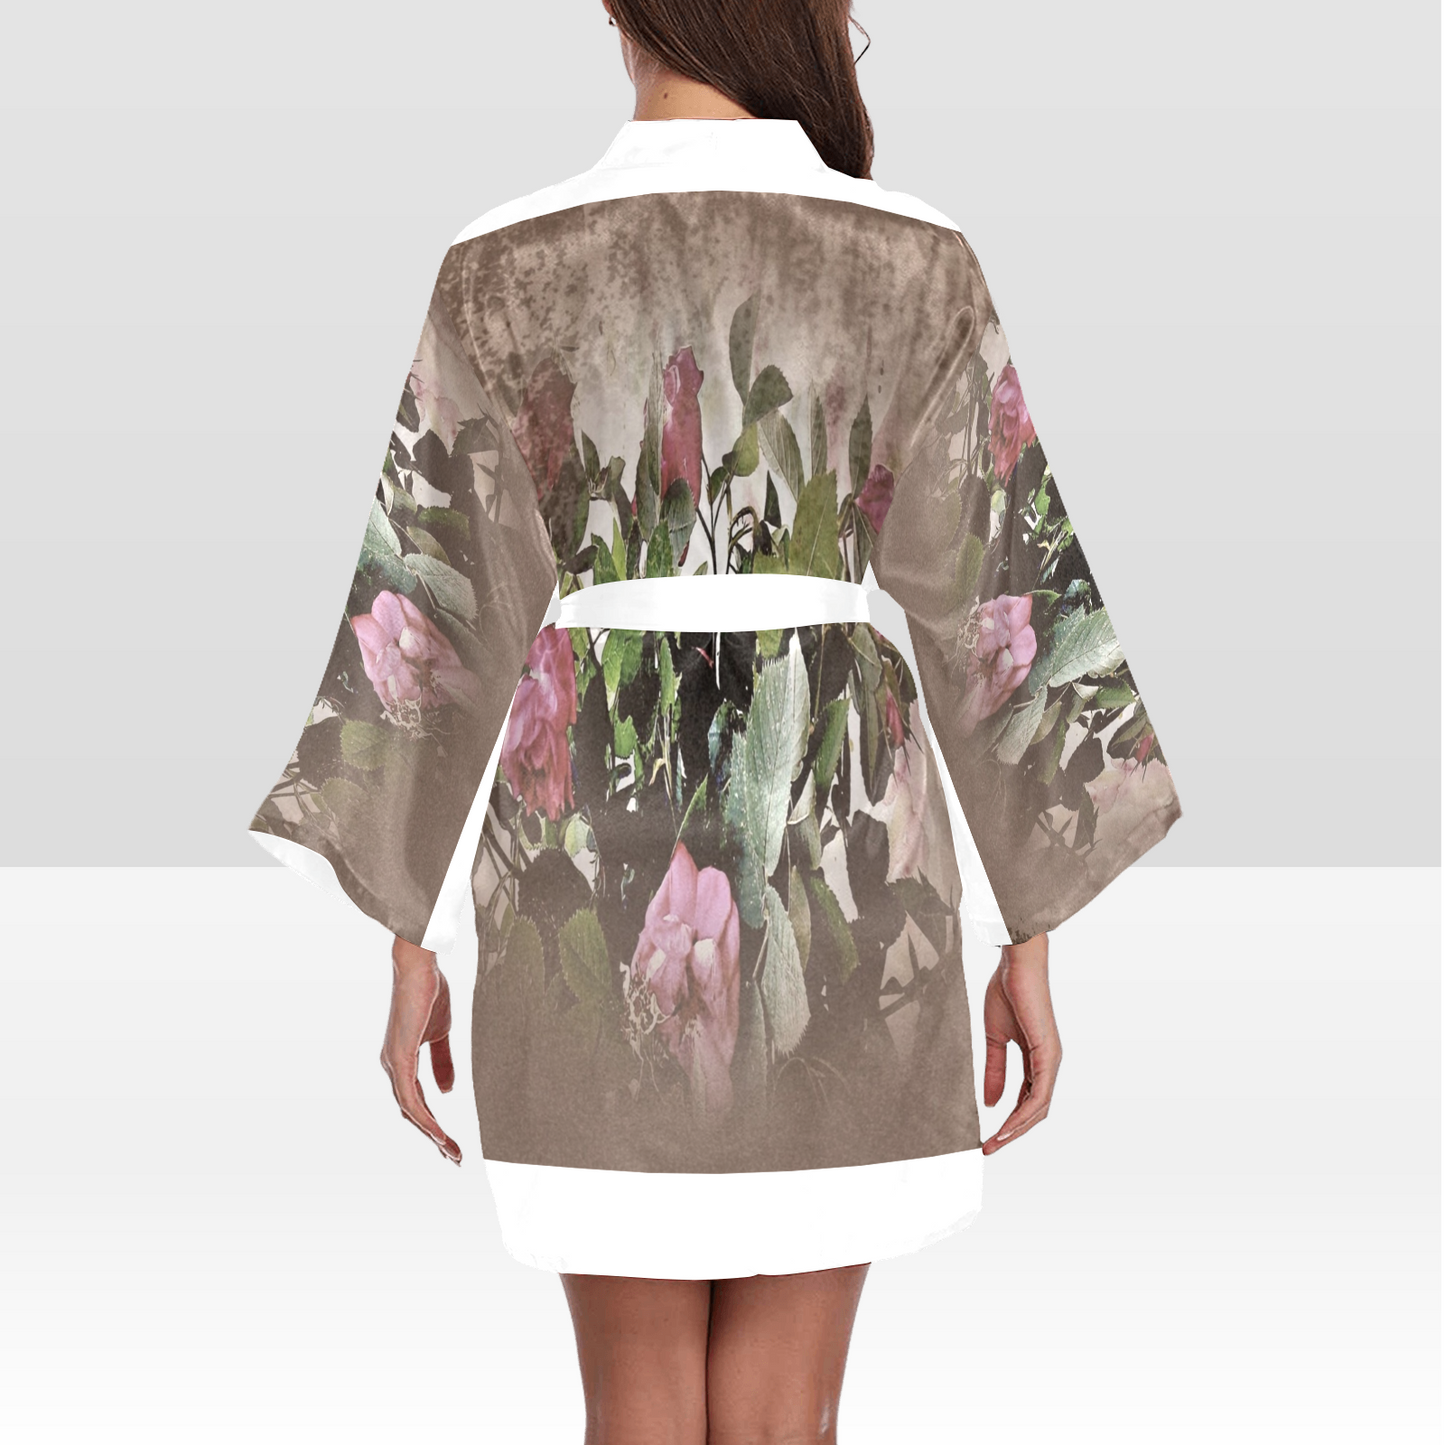 Vintage Floral Kimono Robe, Black or White Trim, Sizes XS to 2XL, Design 22x